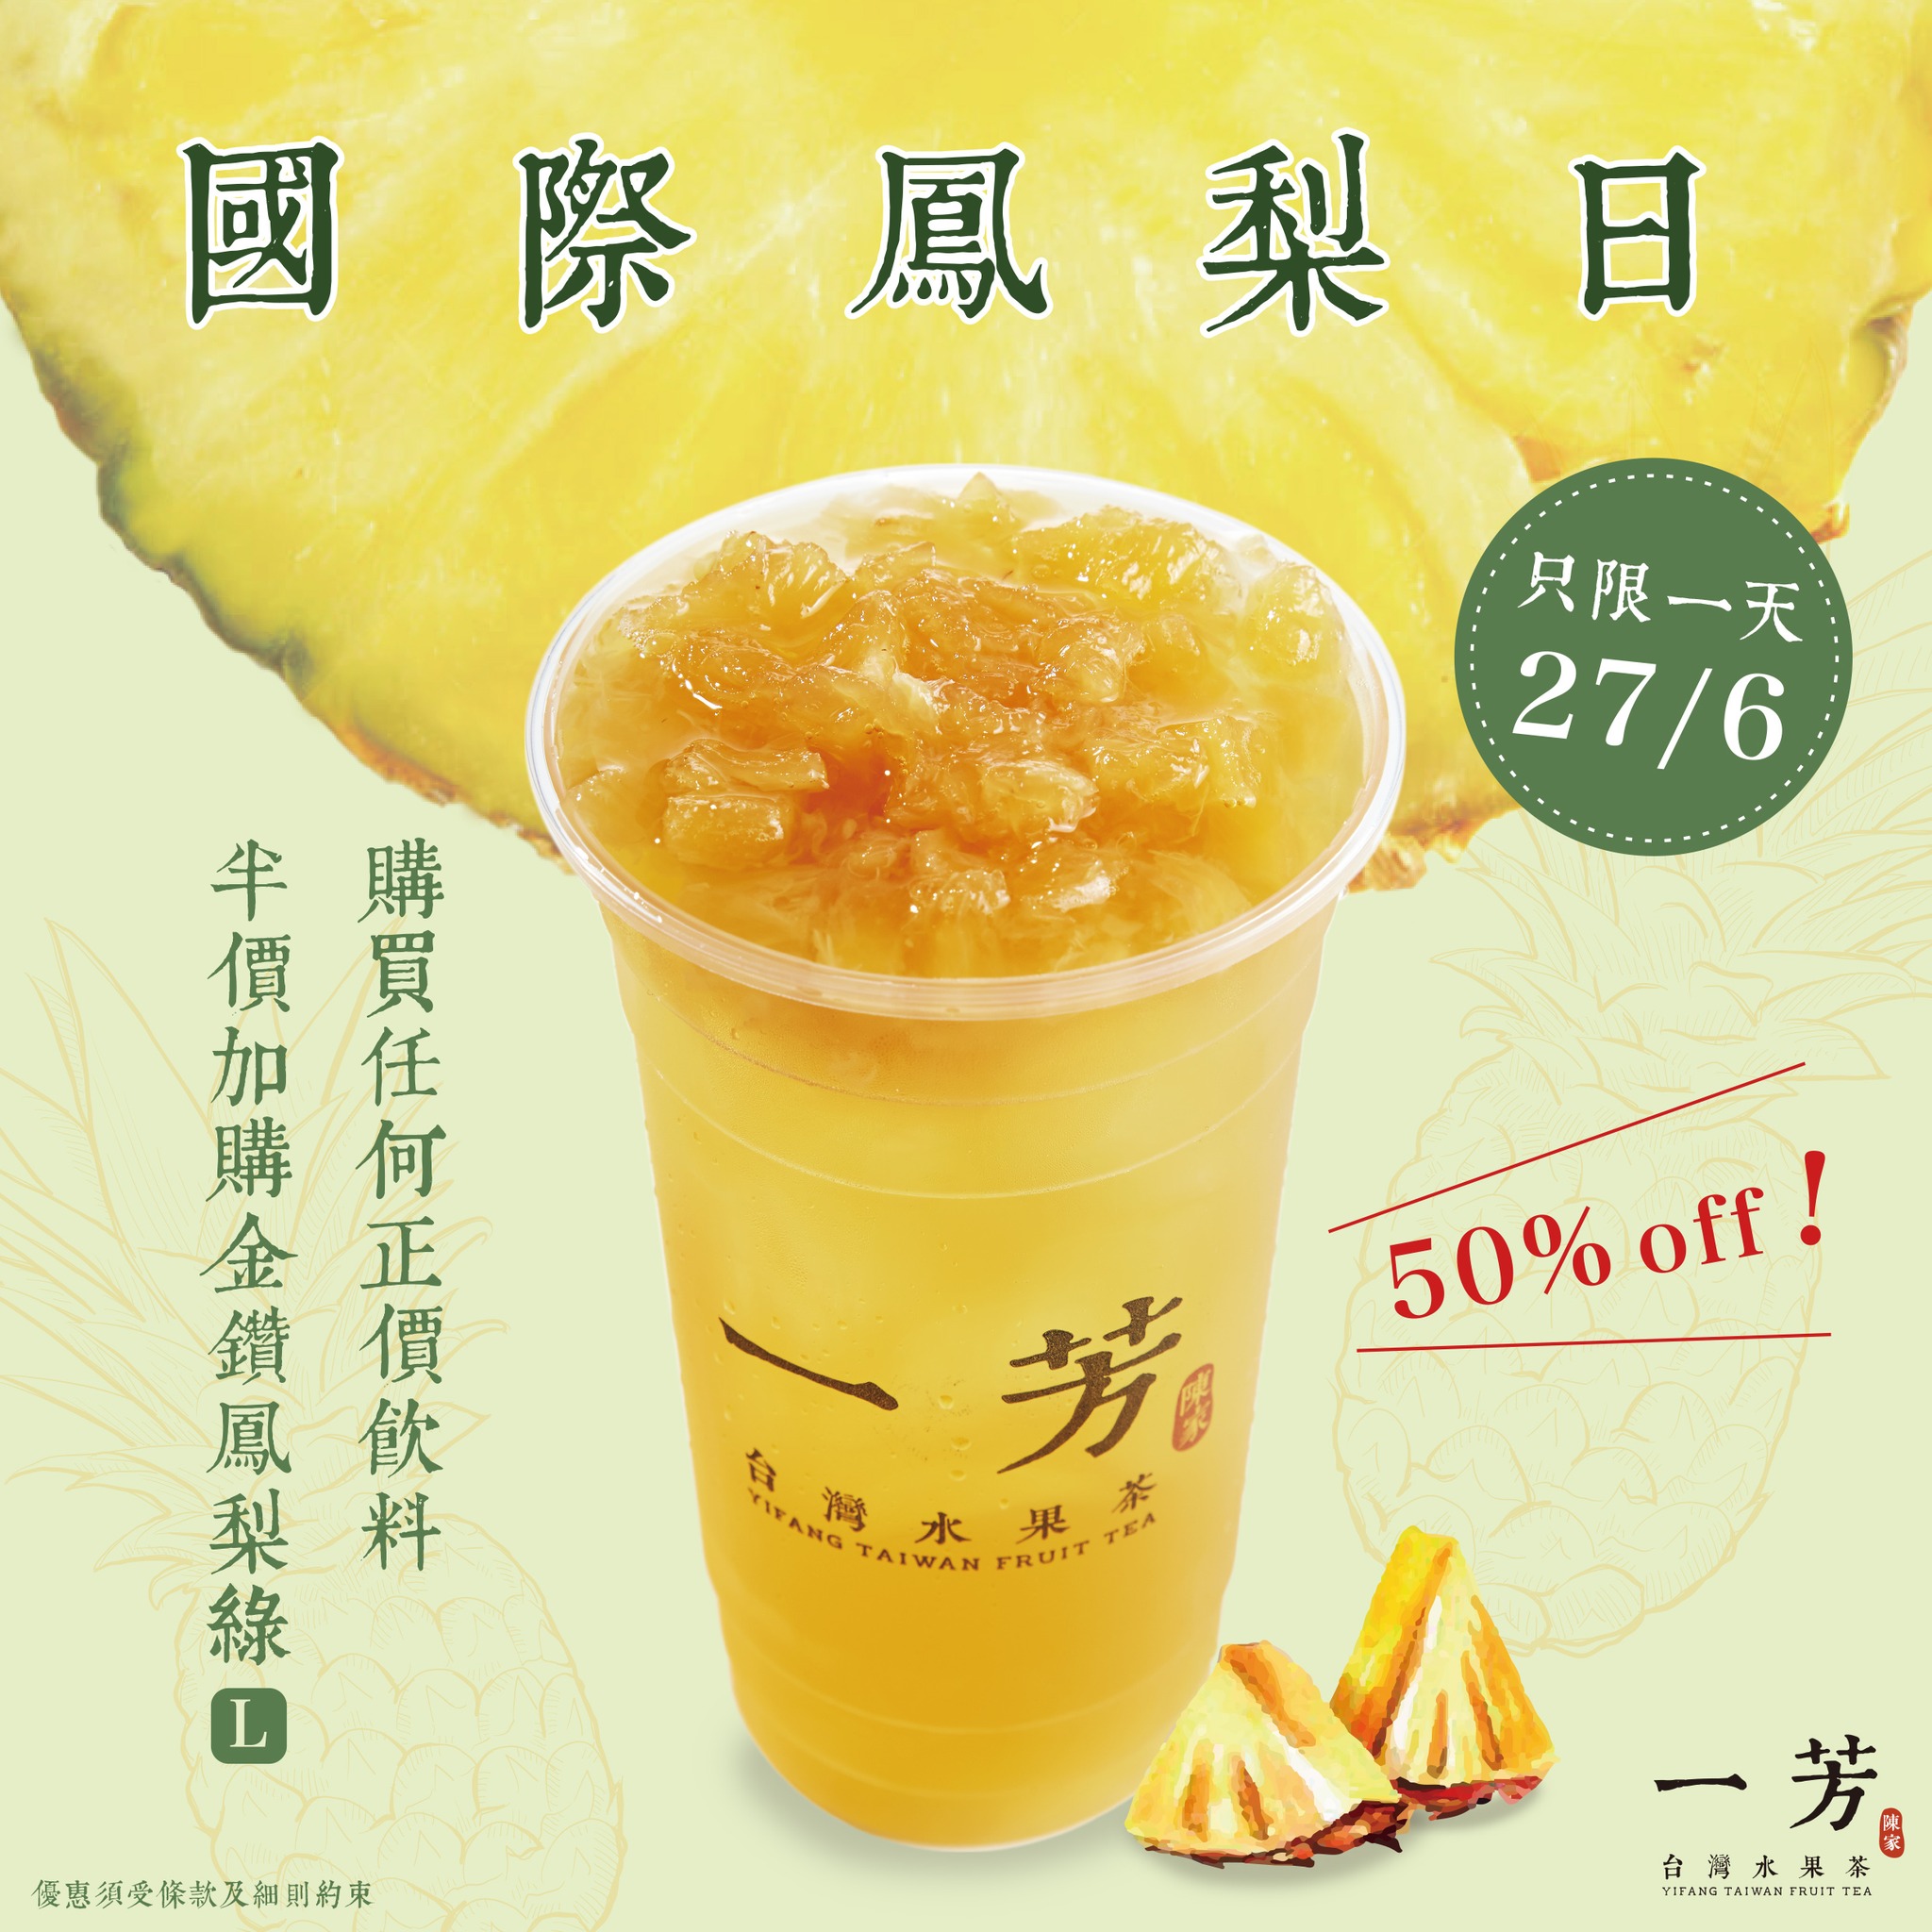 一芳台灣水果茶 國際鳳梨日 購買任何正價飲料 半價加購金鑽鳳梨綠